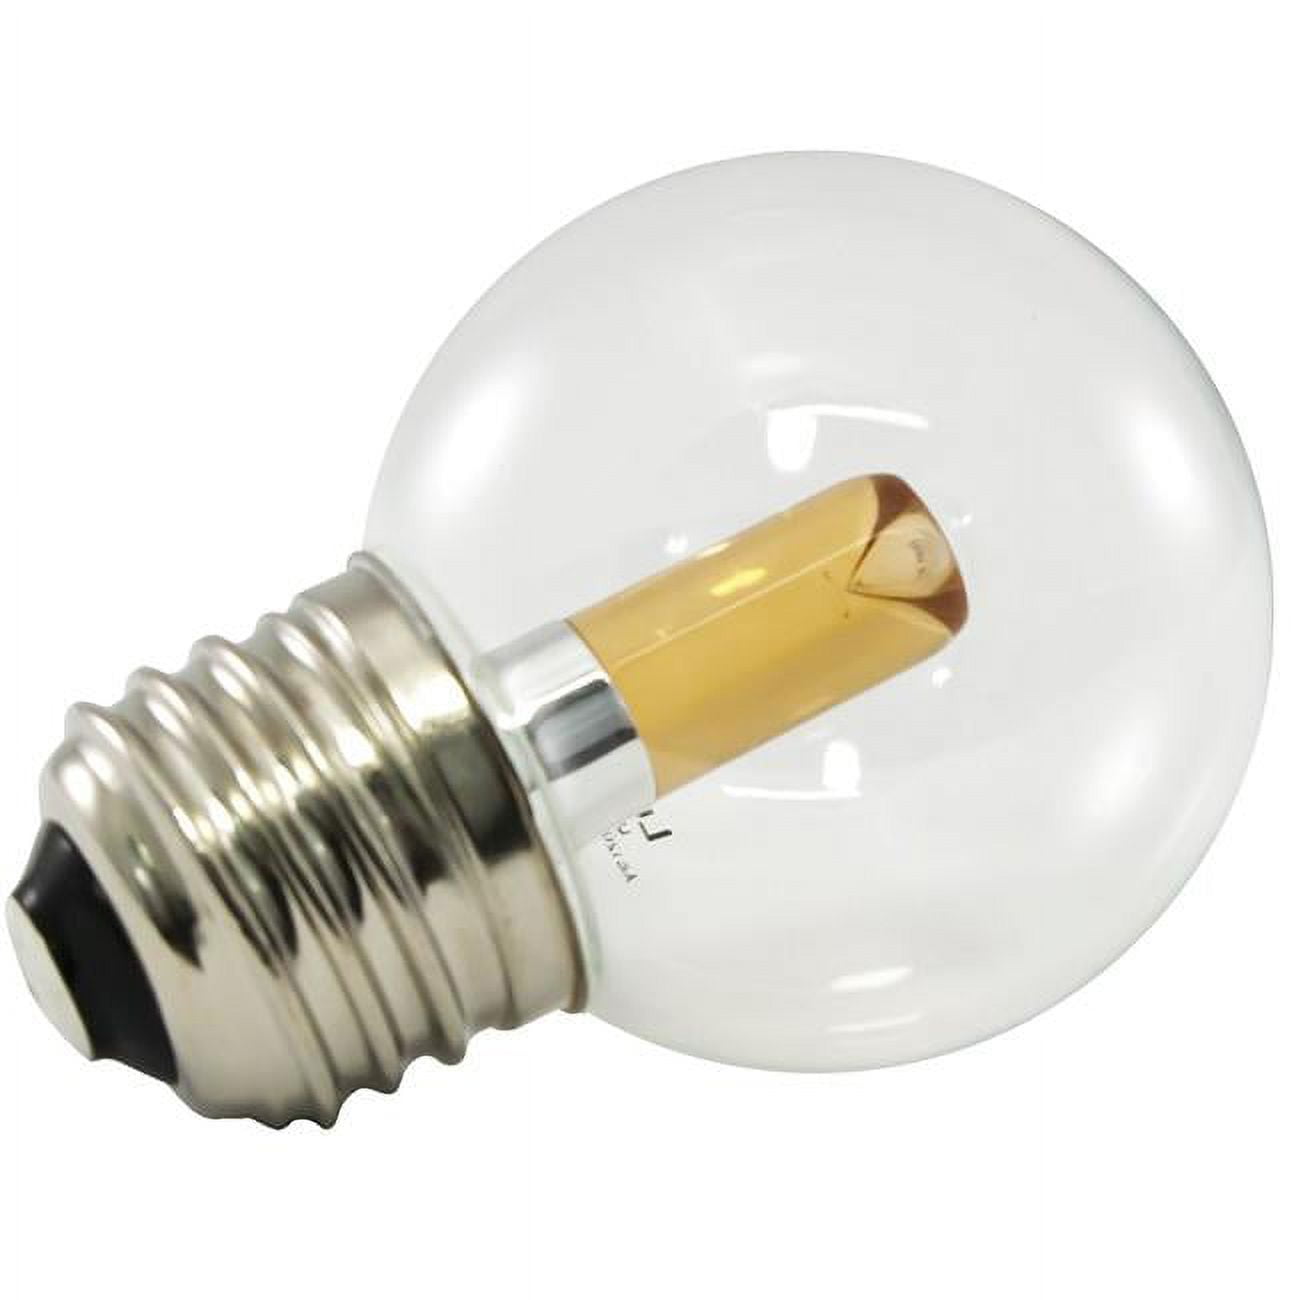 Picture of AmericanLighting PG50-E26-UWW Dimmable LED Globe Light Bulbs - 1.4 watt, 120 V - 2400K, Ultra Warm White